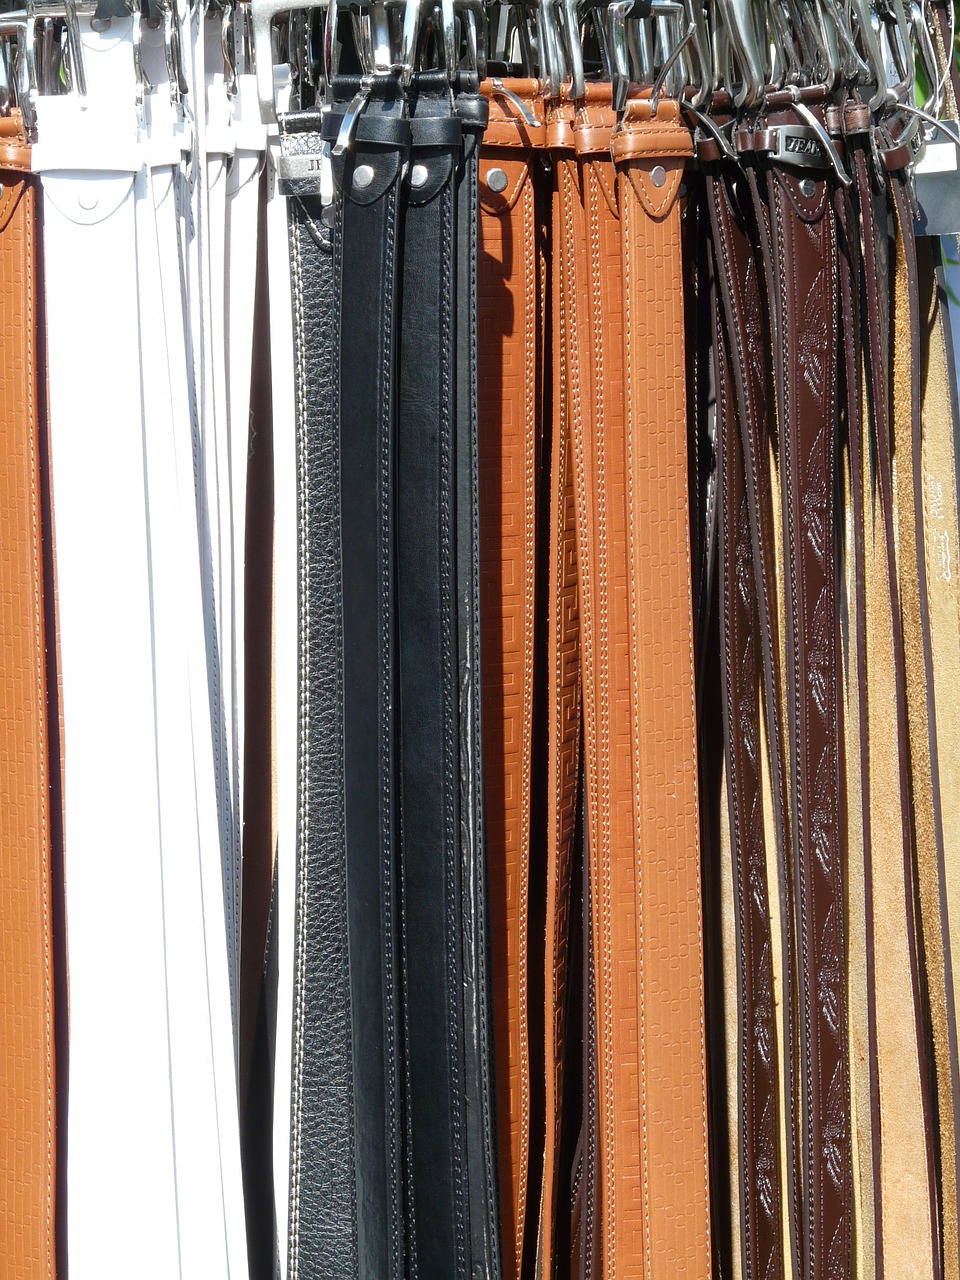 belts leather mass free photo